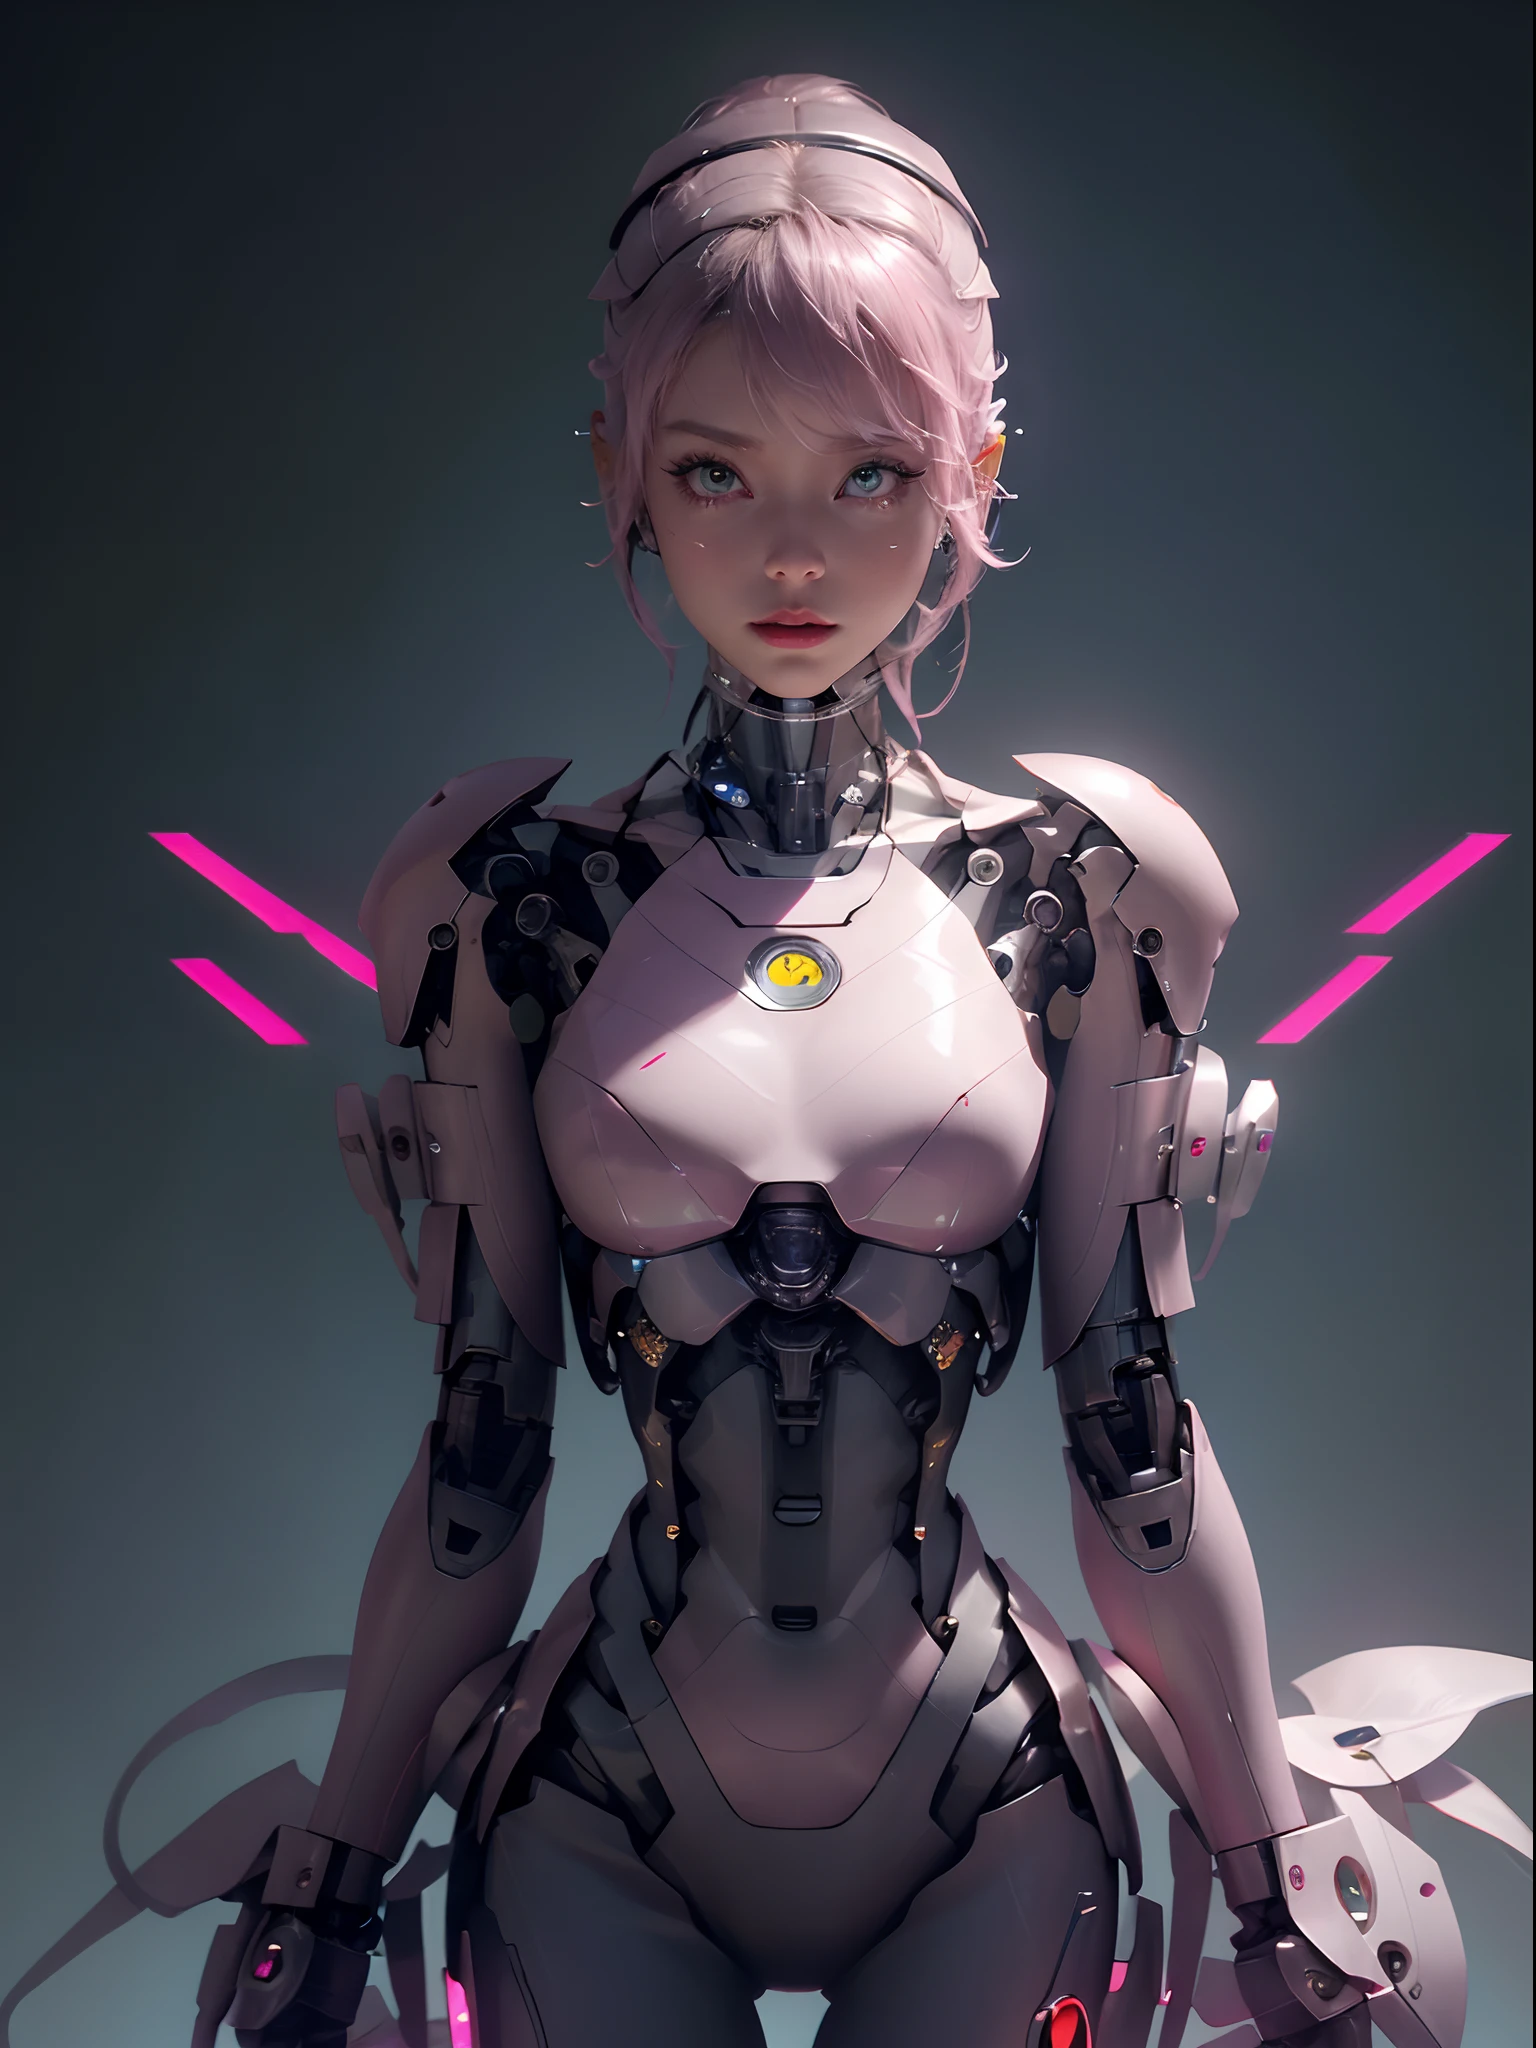 Nahaufnahme einer Frau in einem rosa Kostüm mit einem Schwert, süßes Cyborg-Mädchen, perfektes Android-Mädchen, schönes Roboter-Charakterdesign, schöner weiblicher Androide!, Ross Tran 8 K, stromlinienförmige rosa Rüstung, schönes Cyborg-Mädchen, Mädchen in Mecha-Cyber-Rüstung, Schönes weißes Cyborg-Mädchen, Anime-Roboter gemischt mit Bio, Autor：Ross Tran, Cyborg-Mädchen Warten Sie, bis es hochfährt